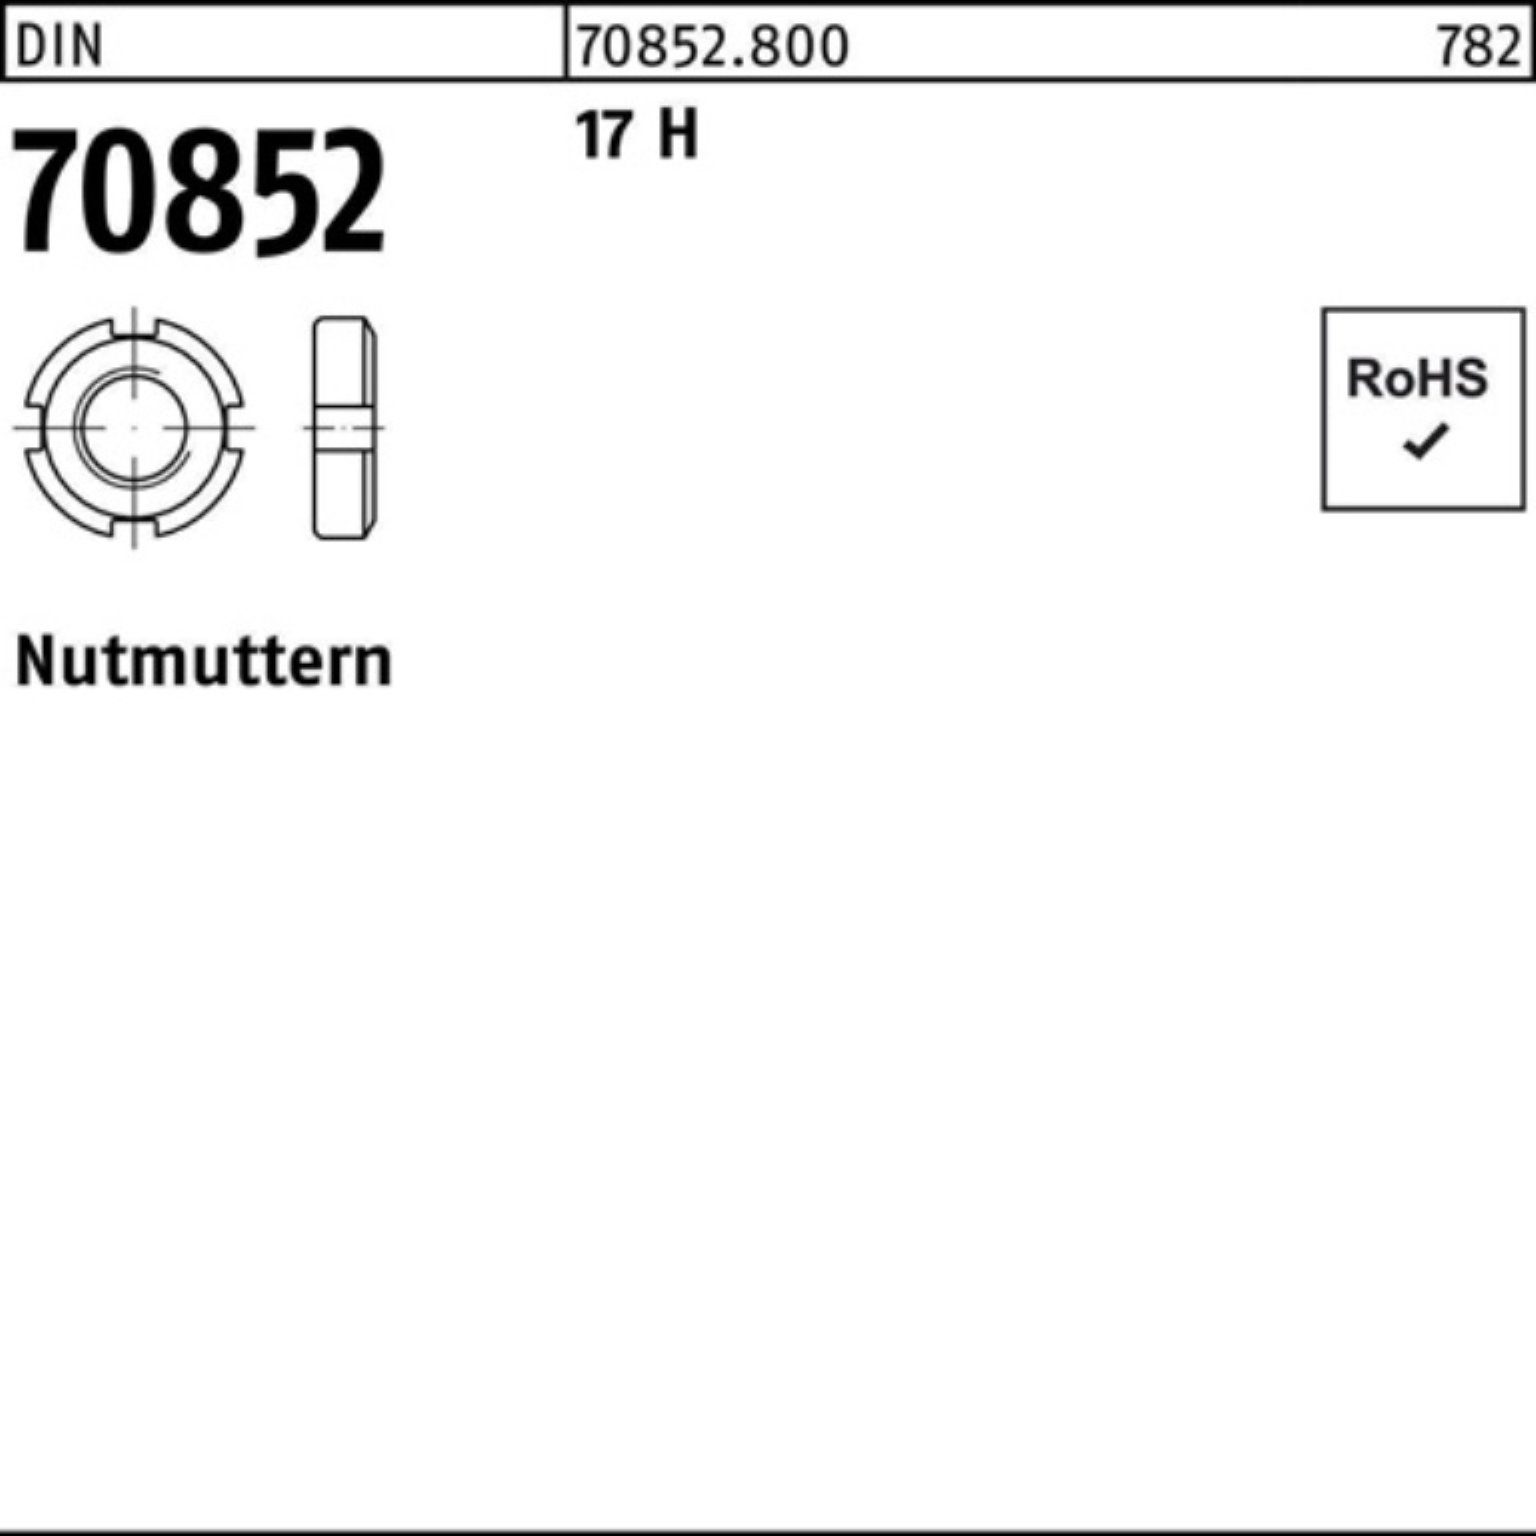 Reyher Nutmutter 100er Pack Nutmutter DIN 70852 M80x 1,5 17 H 1 Stück DIN 70852 17 H N